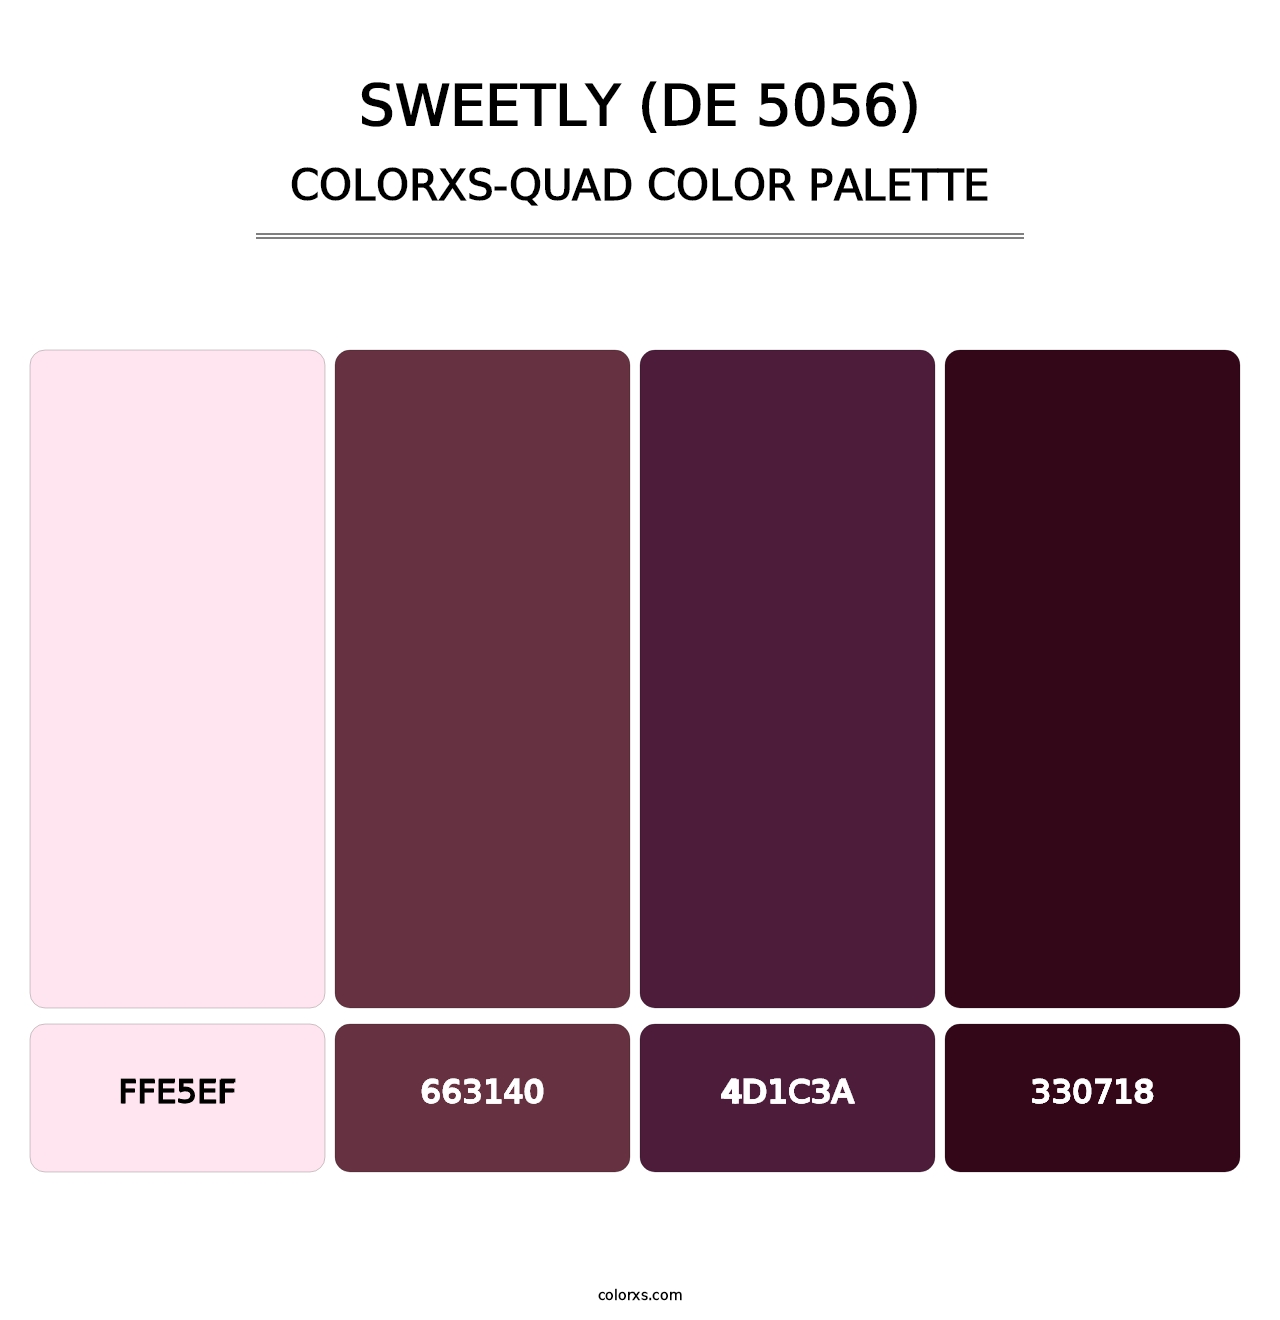 Sweetly (DE 5056) - Colorxs Quad Palette